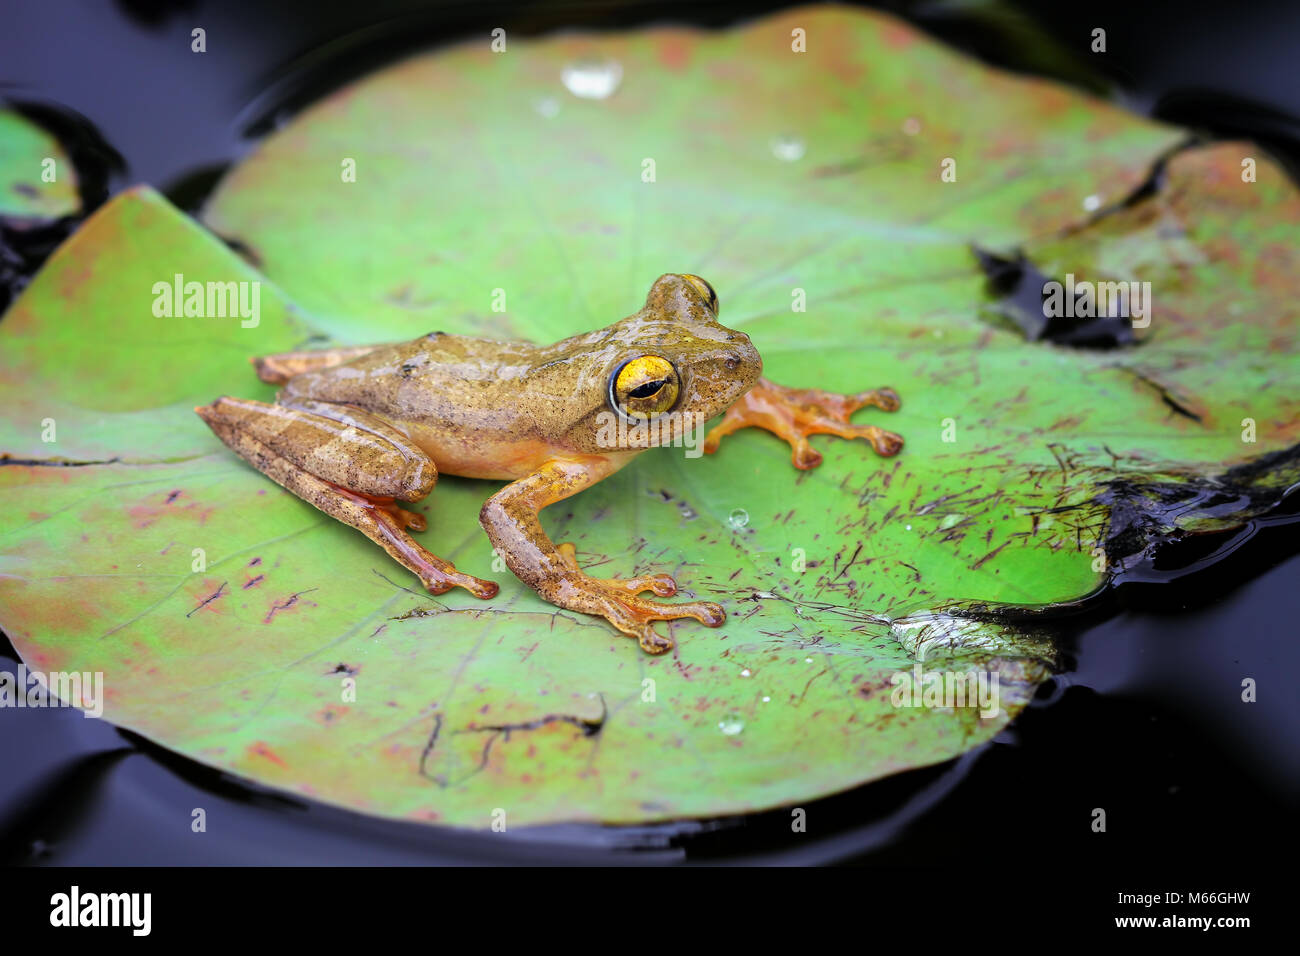 Harlequin tree frog on lotus leaf, Indonesia Stock Photo